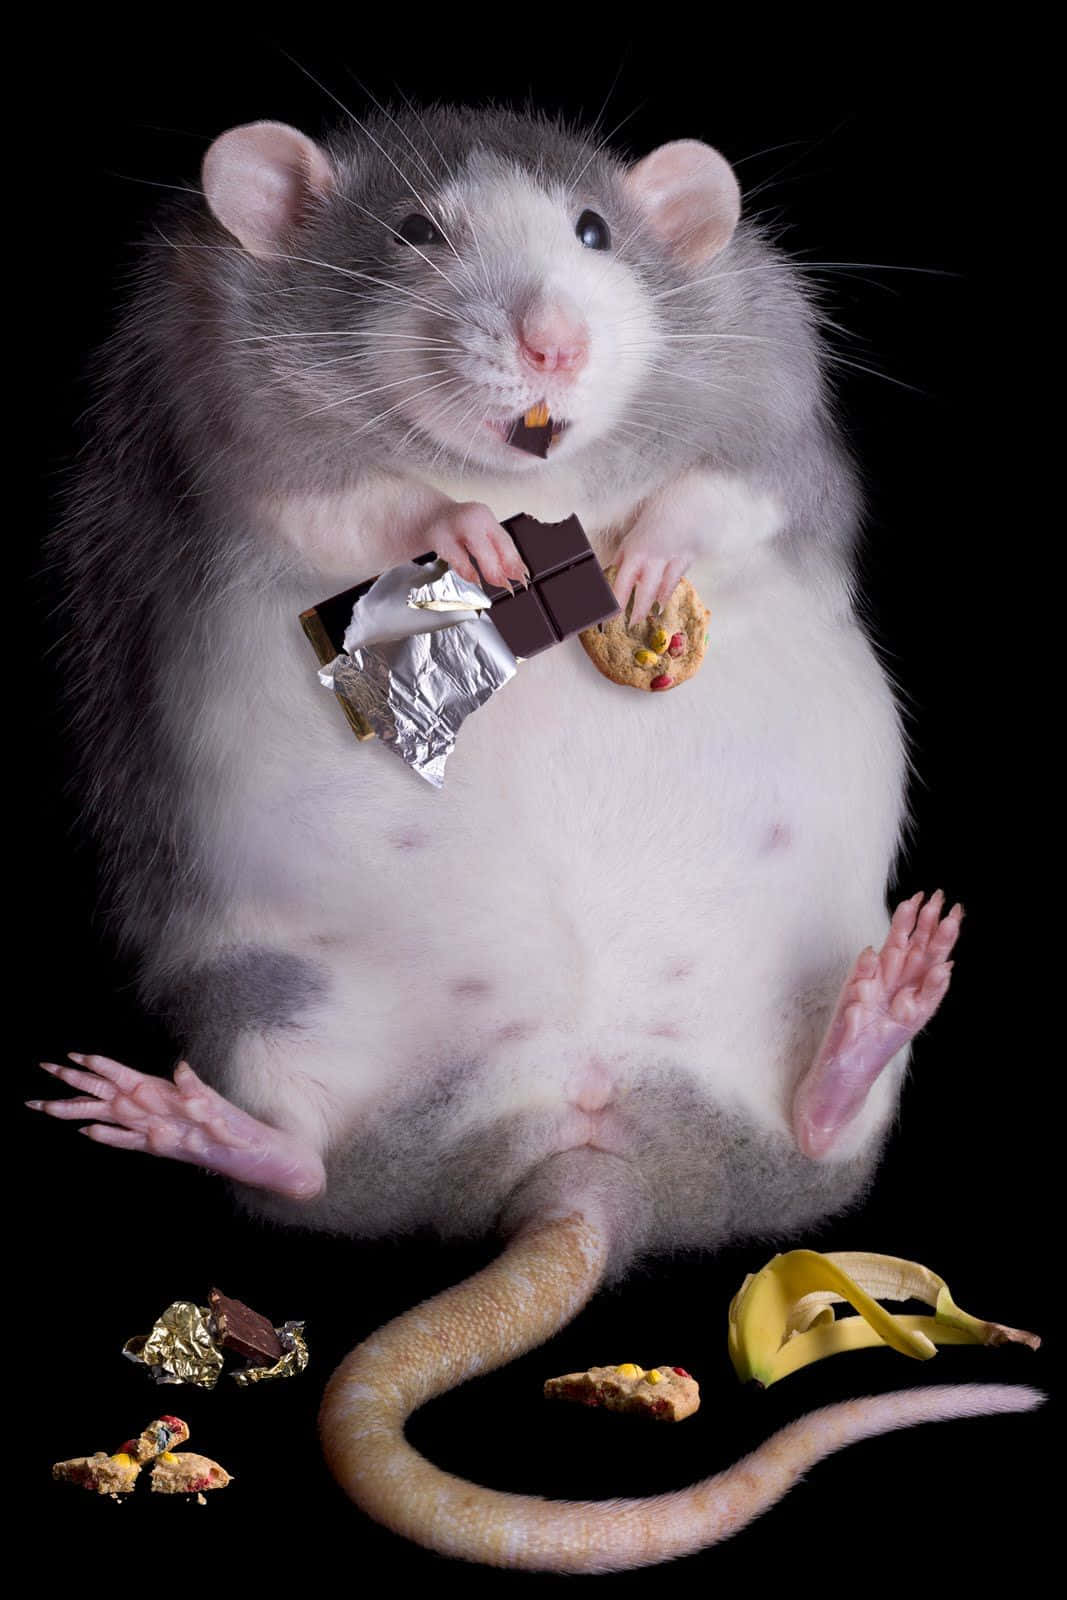 Imagemde Um Ratinho Fofo Comendo Um Chocolate.